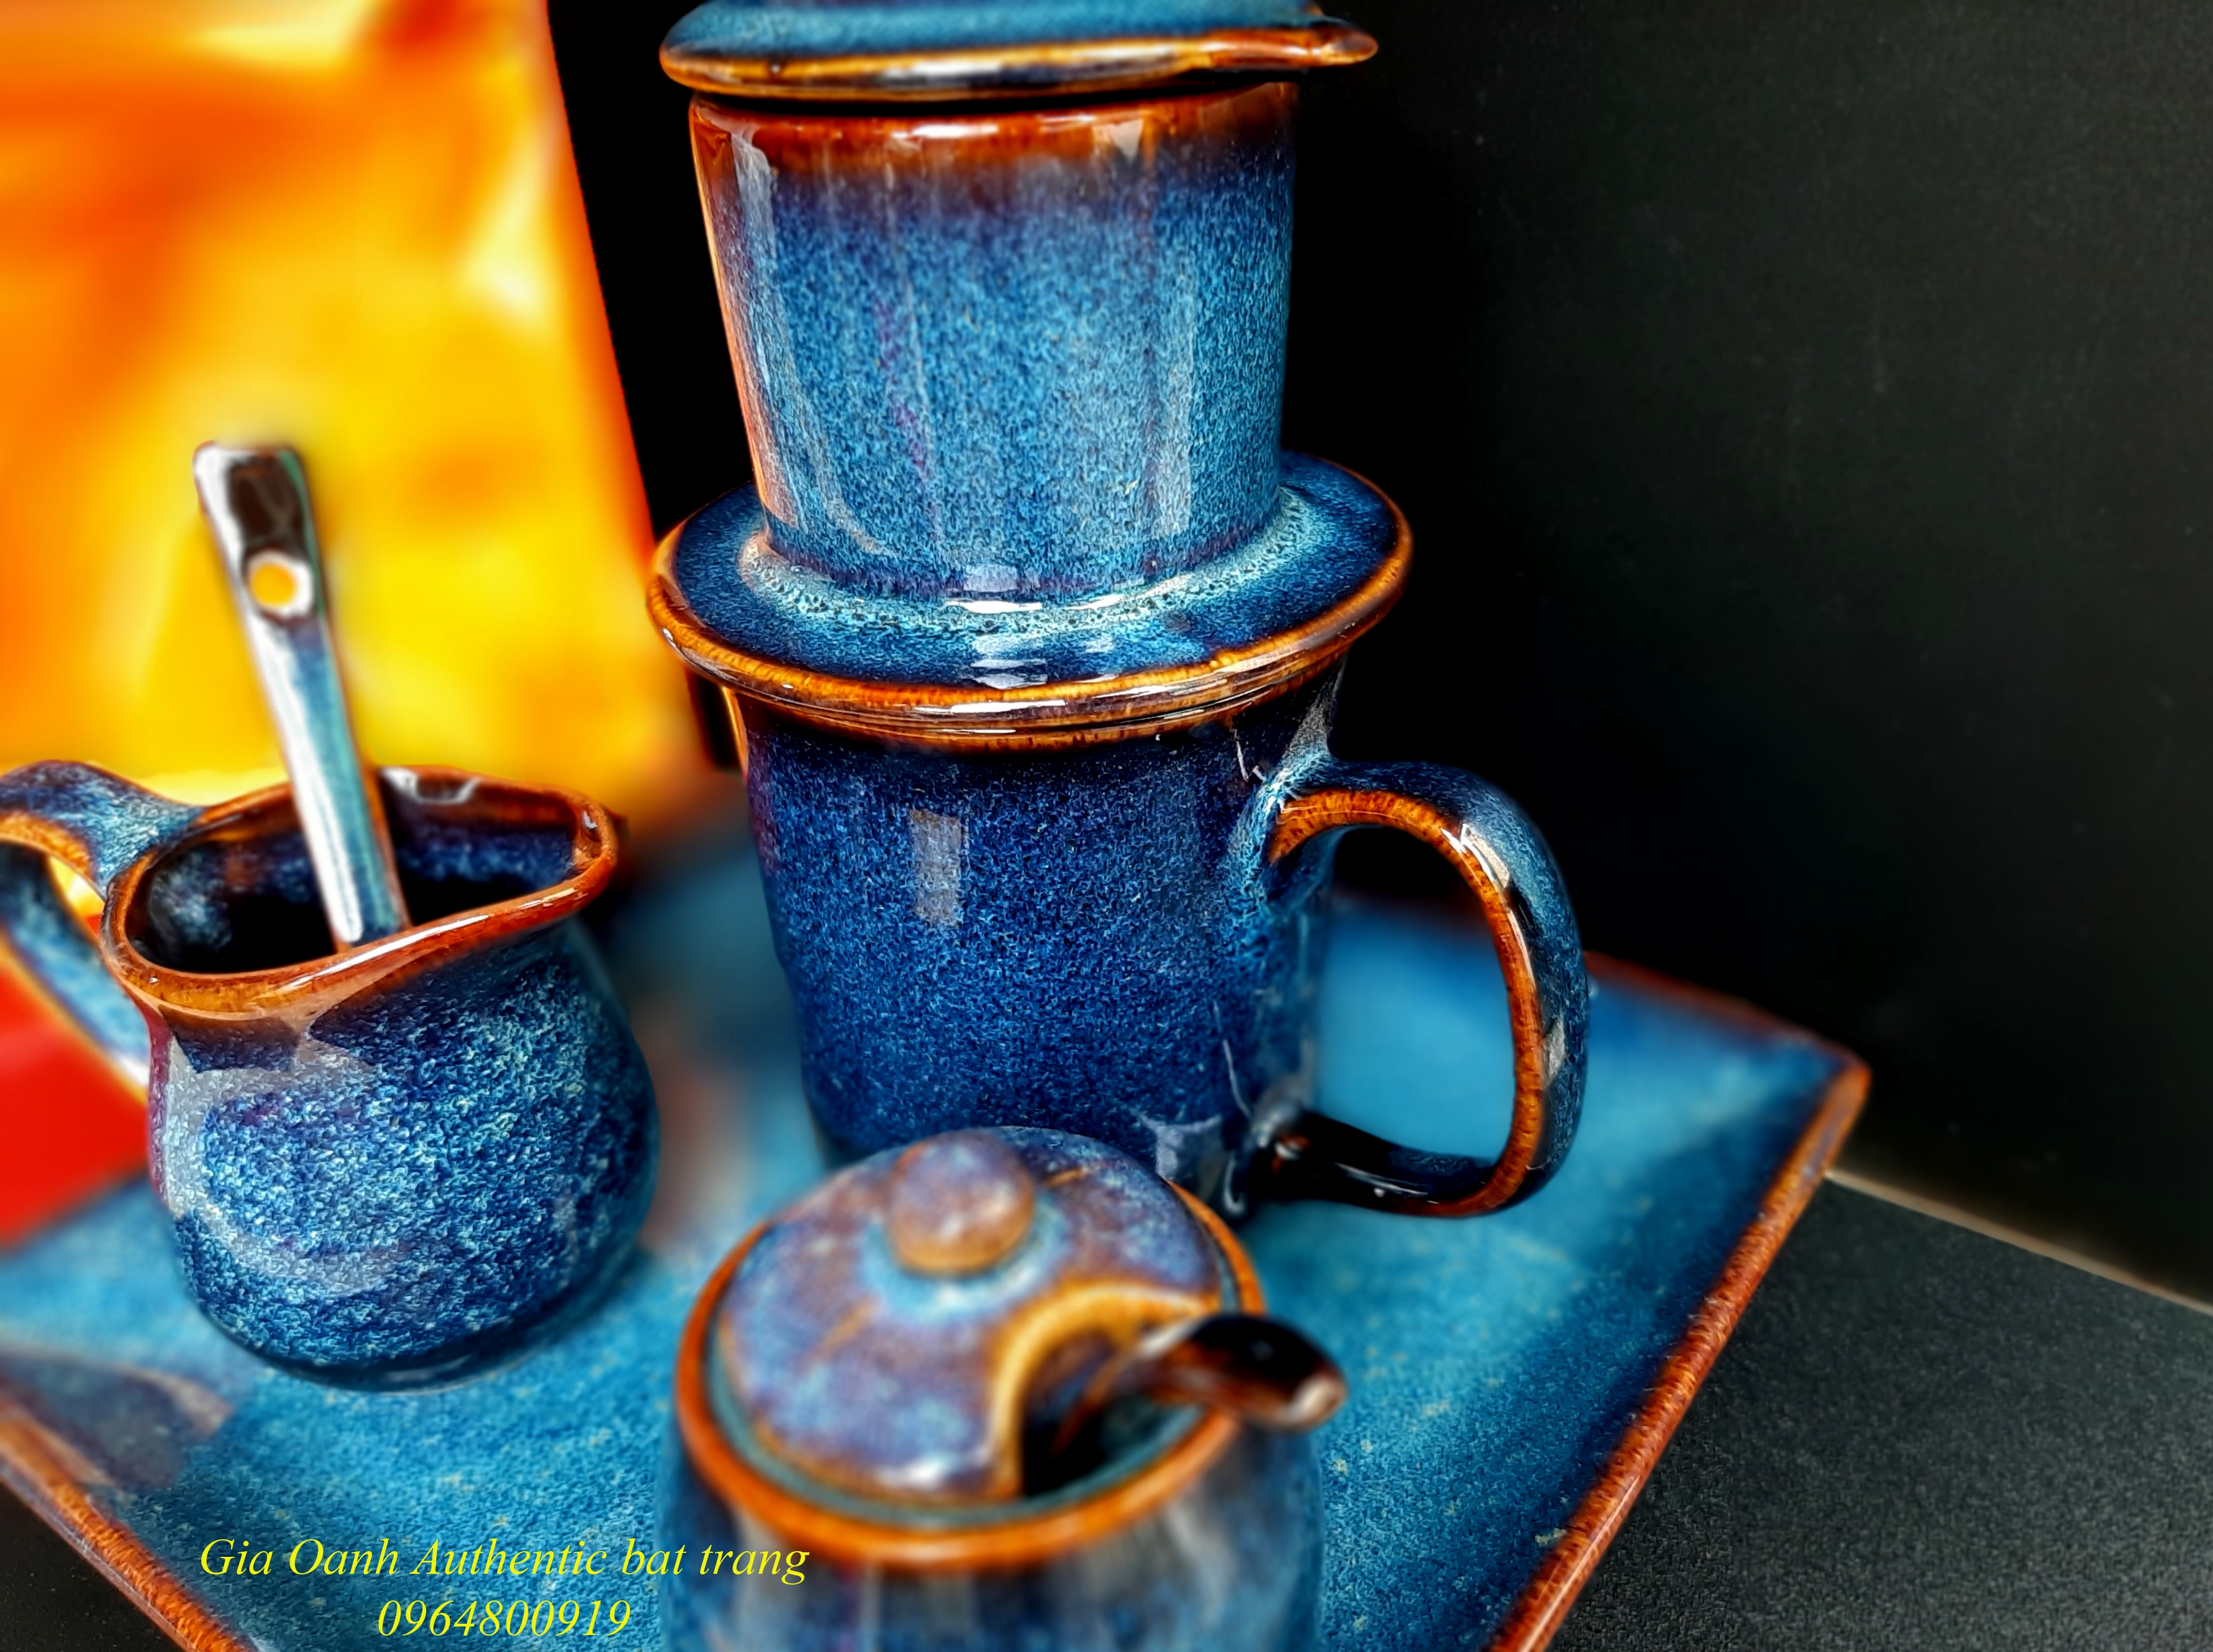 Coffee gift  set S1 -Bộ  quà tặng cà phê phin -hàng quà tặng gốm sứ độc đáo và ý nghĩa  của Gia Oanh Authentic bat trang